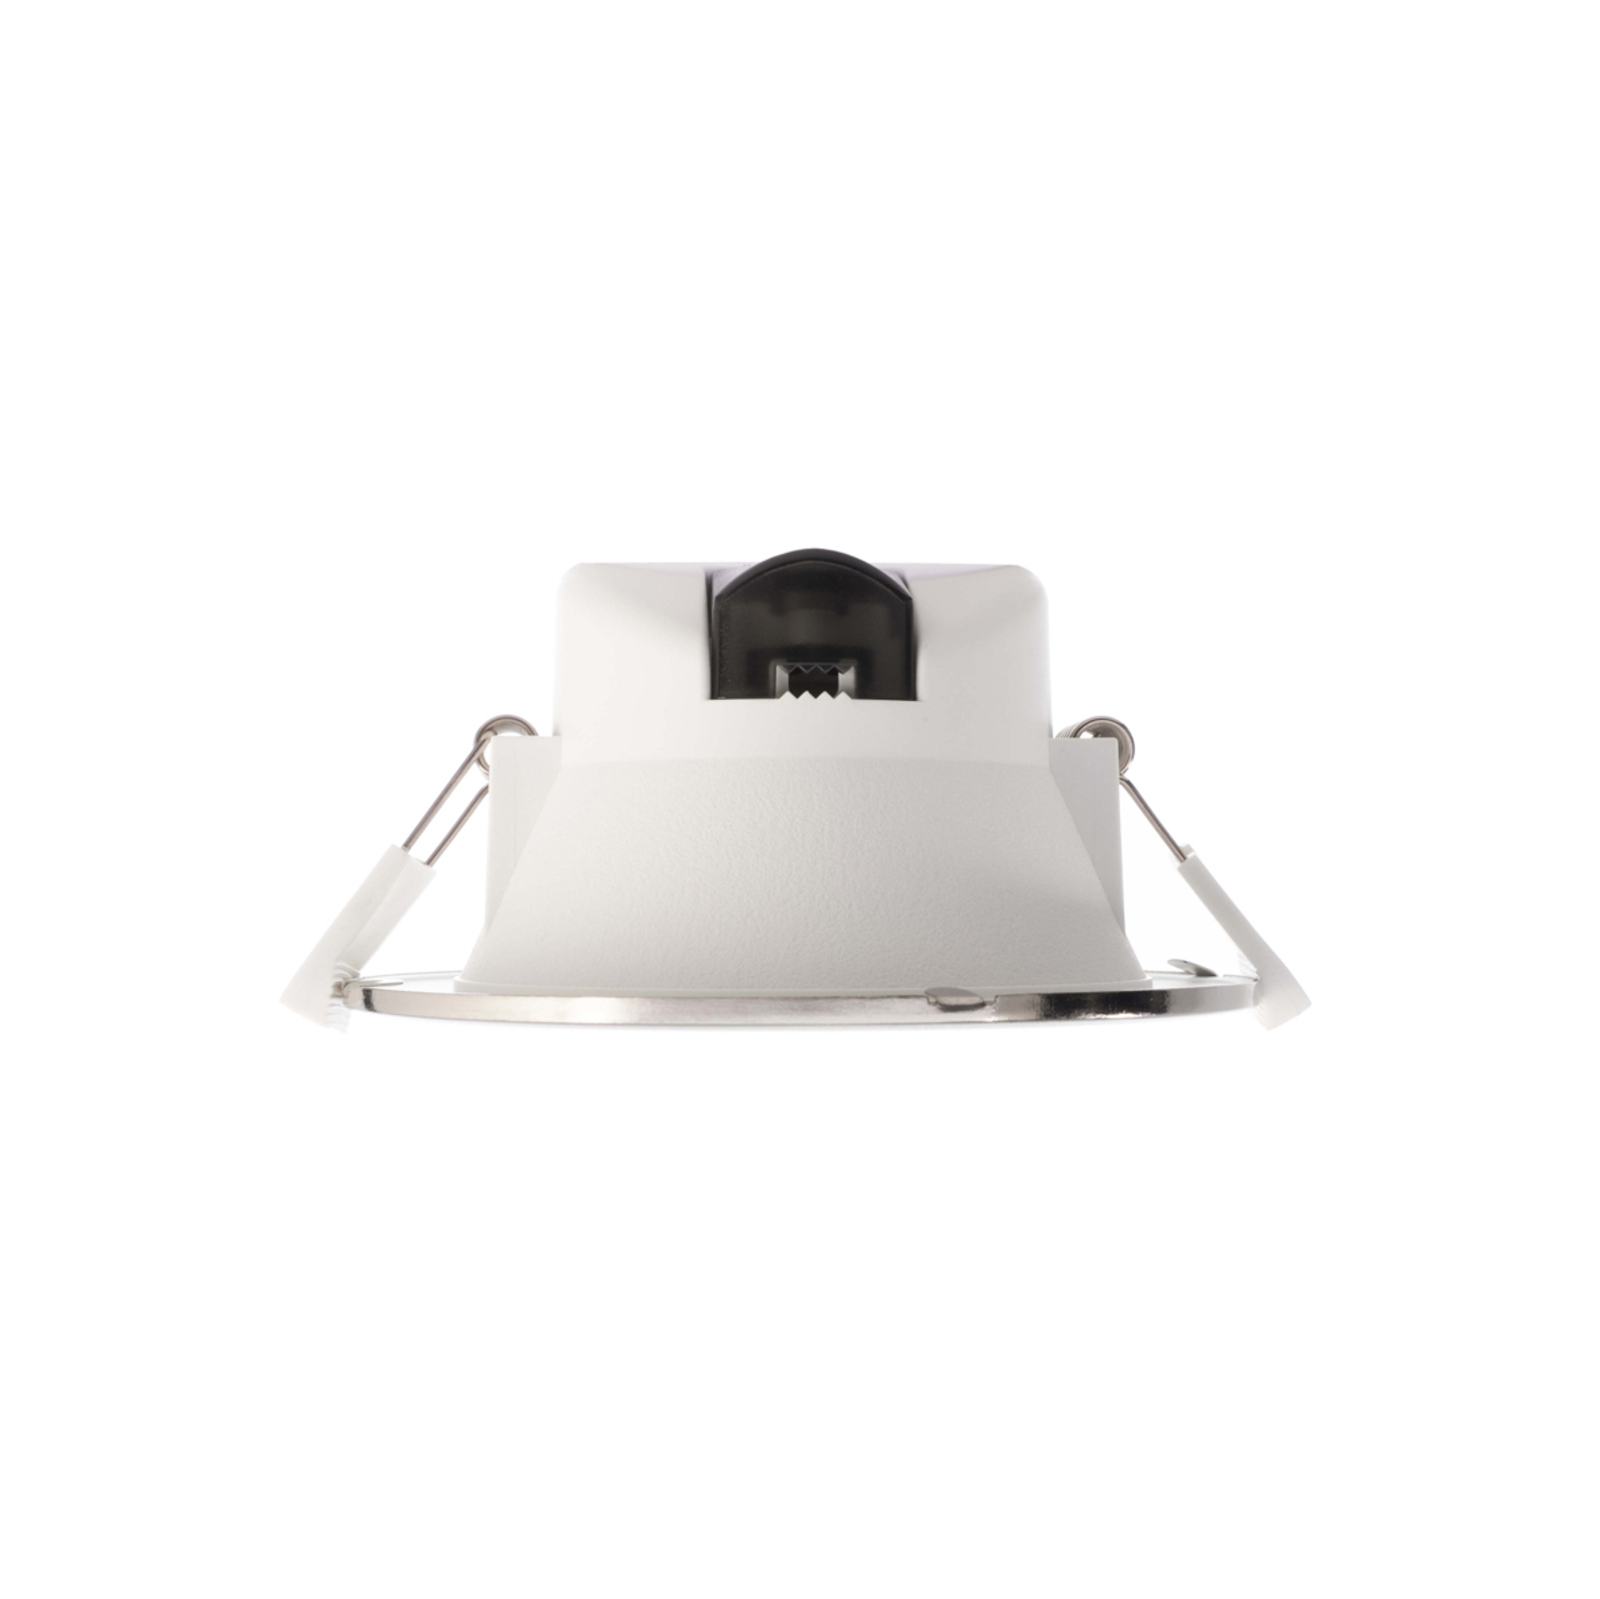 Acrux 145 vestavné LED světlo, bílé, Ø 17,4 cm